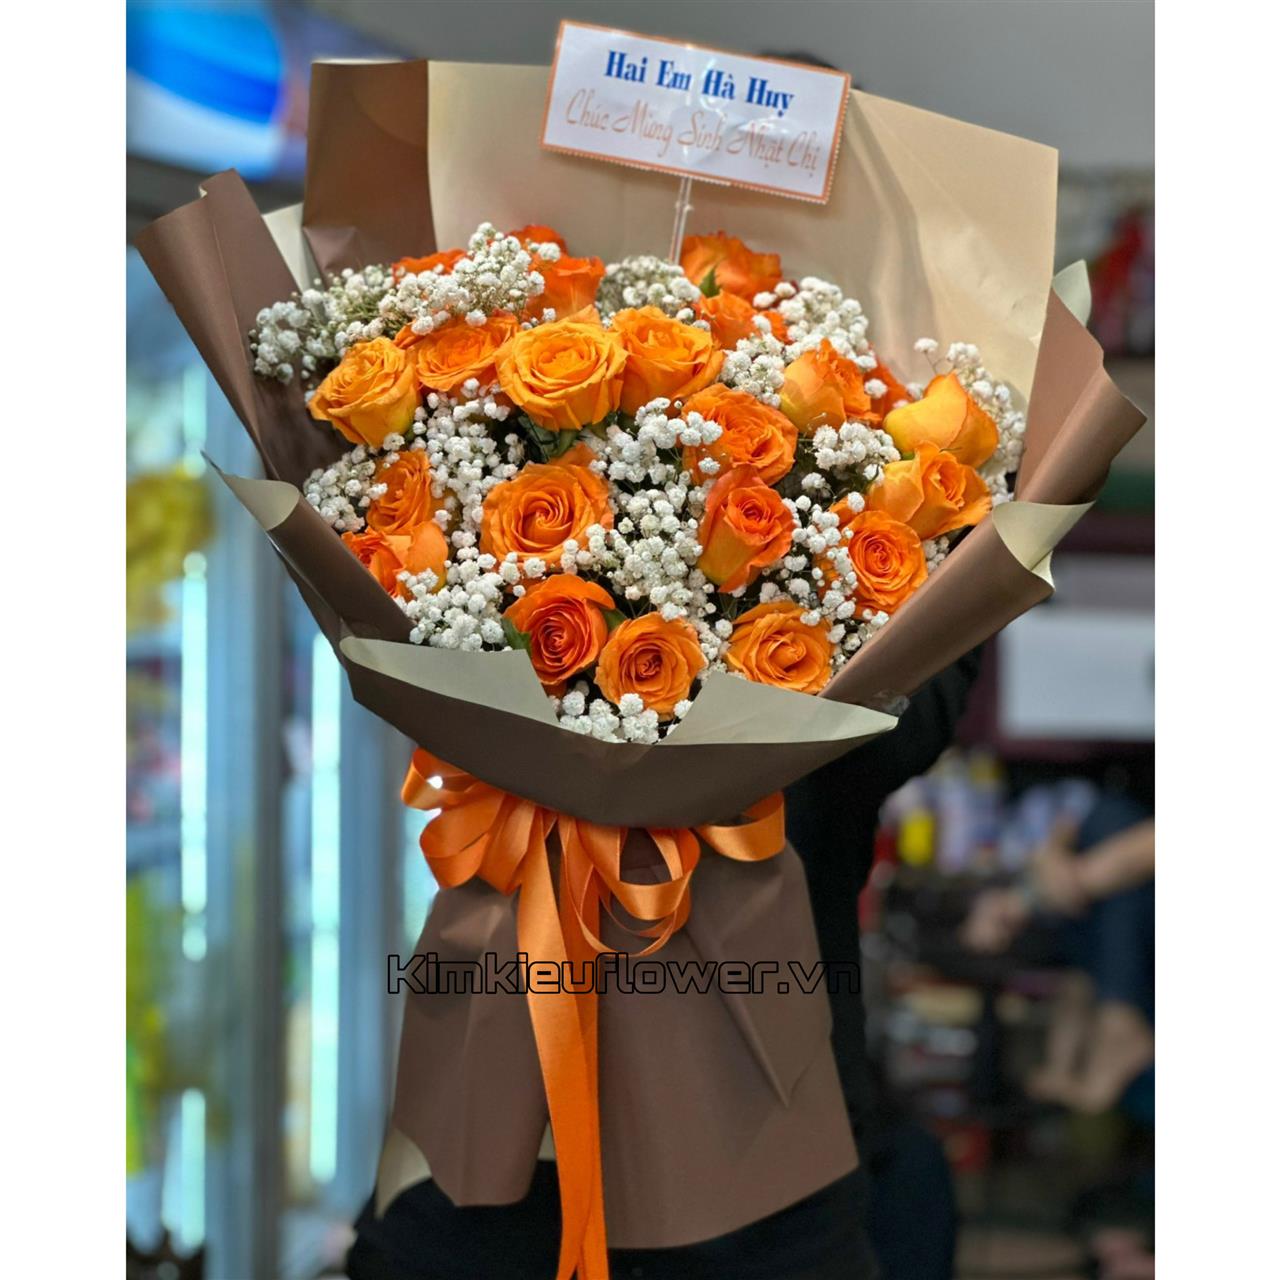 hồng cam quốc vương gửi tới chị gái nhân ngày sinh nhật với bông hoa to tô điểm thêm những cành baby trắng